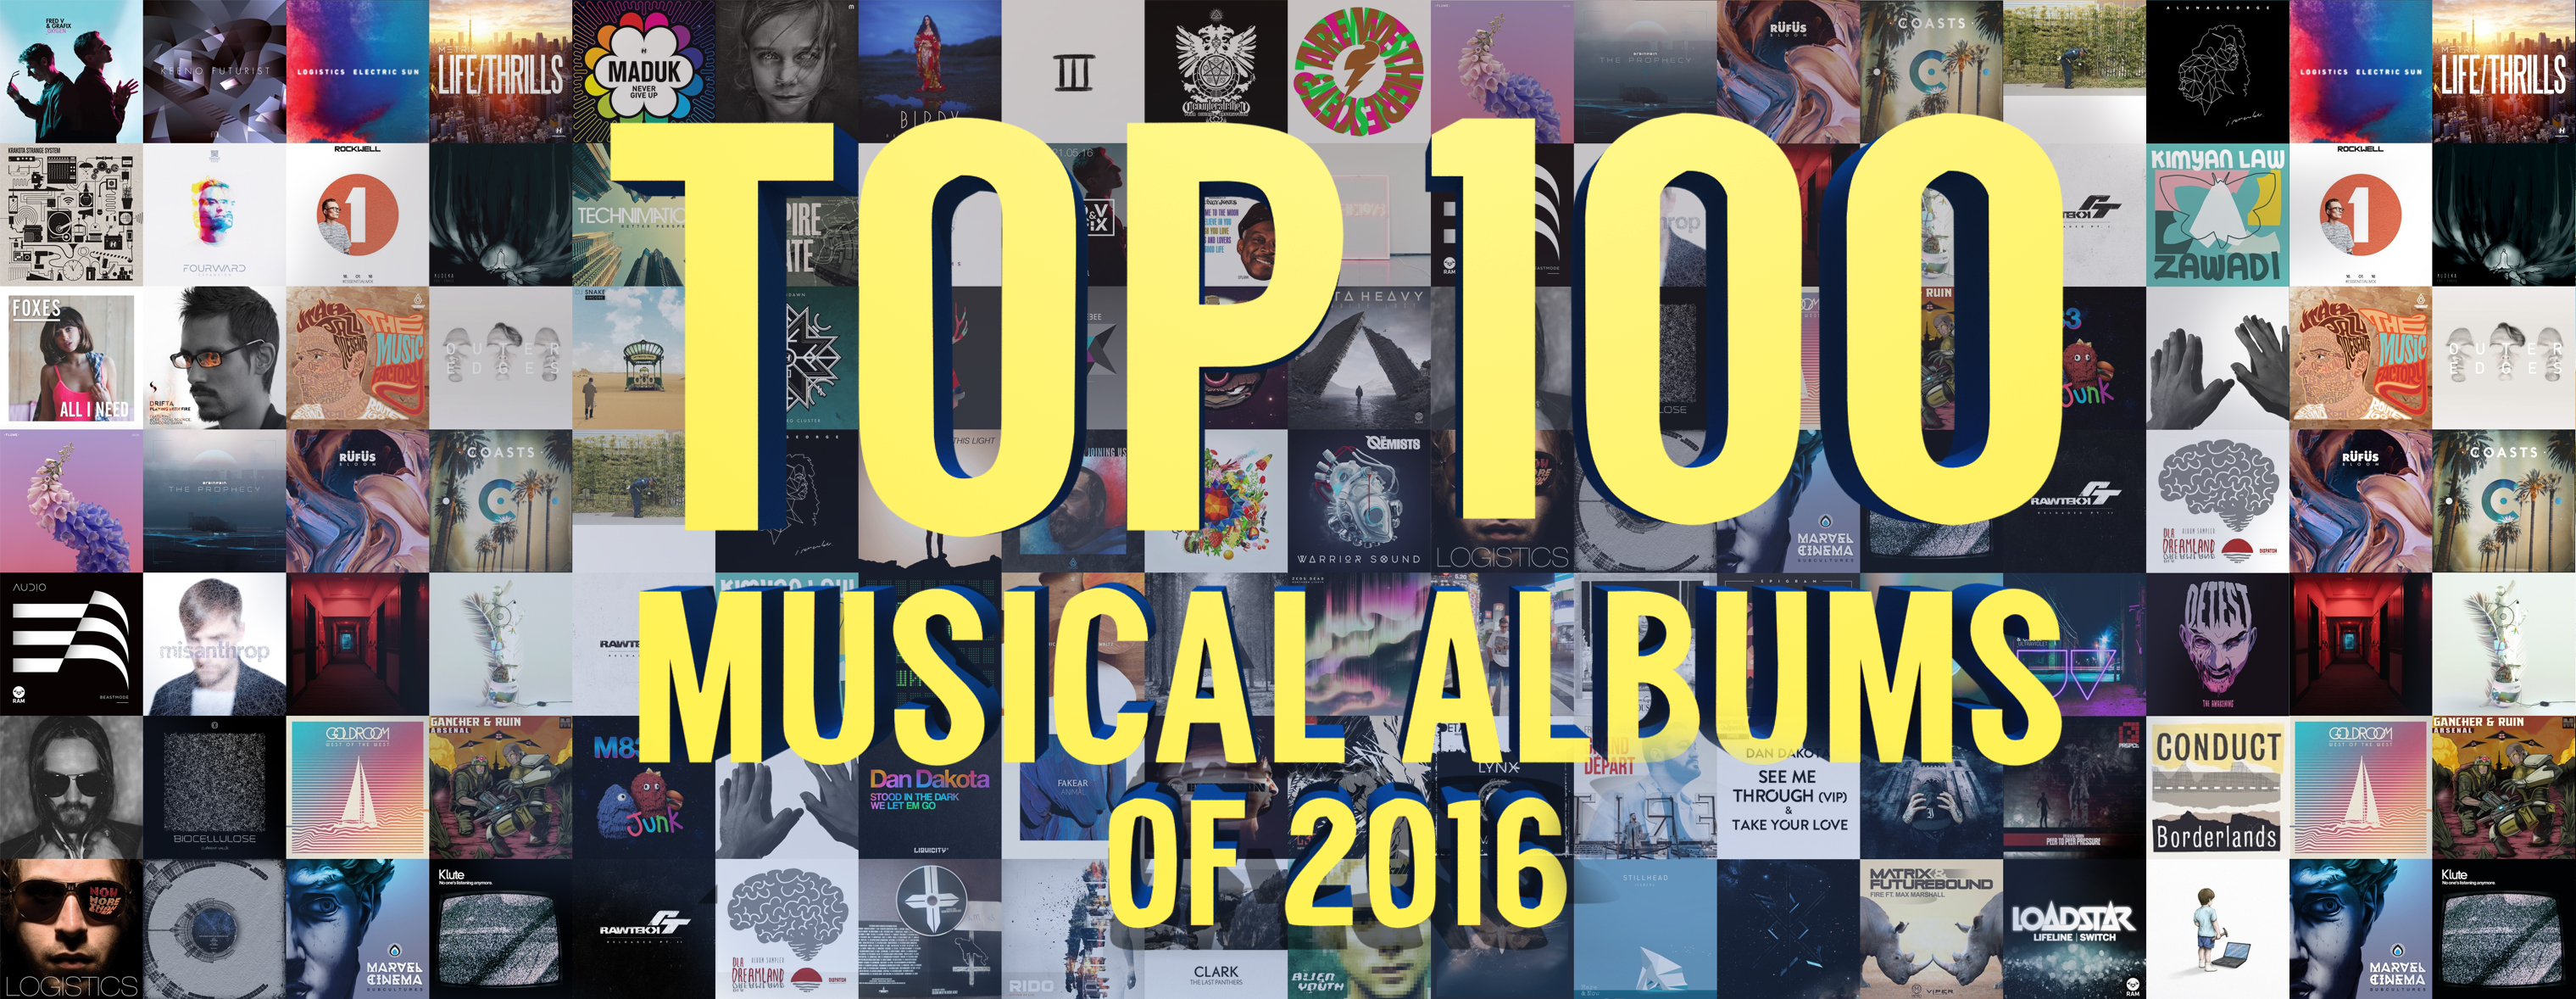 ТОП 100 Музыкальных альбомов 2016 по версии Splase / TOP 100 Musical Albums of 2016 version by Splase 